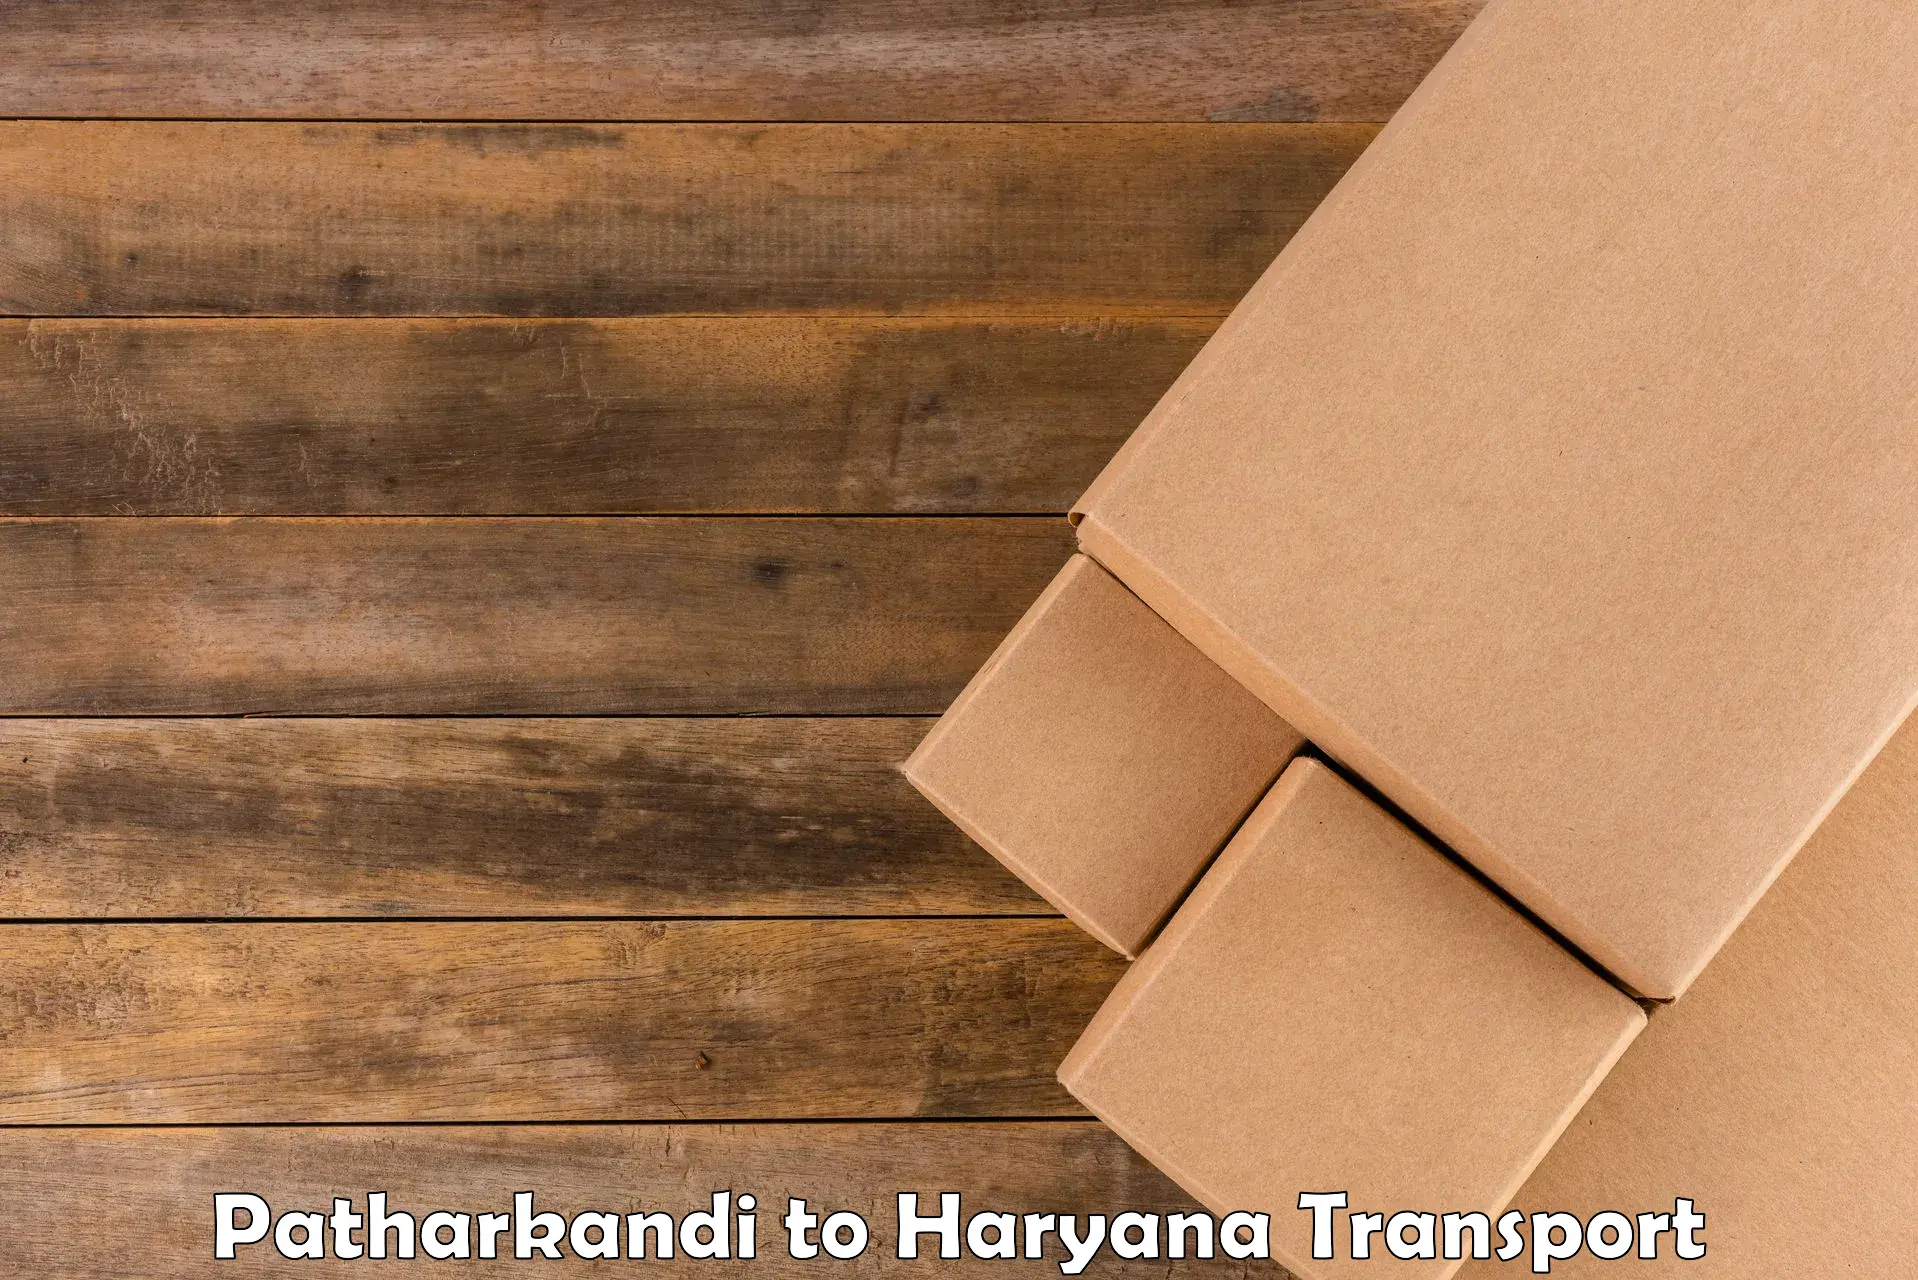 Shipping services Patharkandi to NCR Haryana